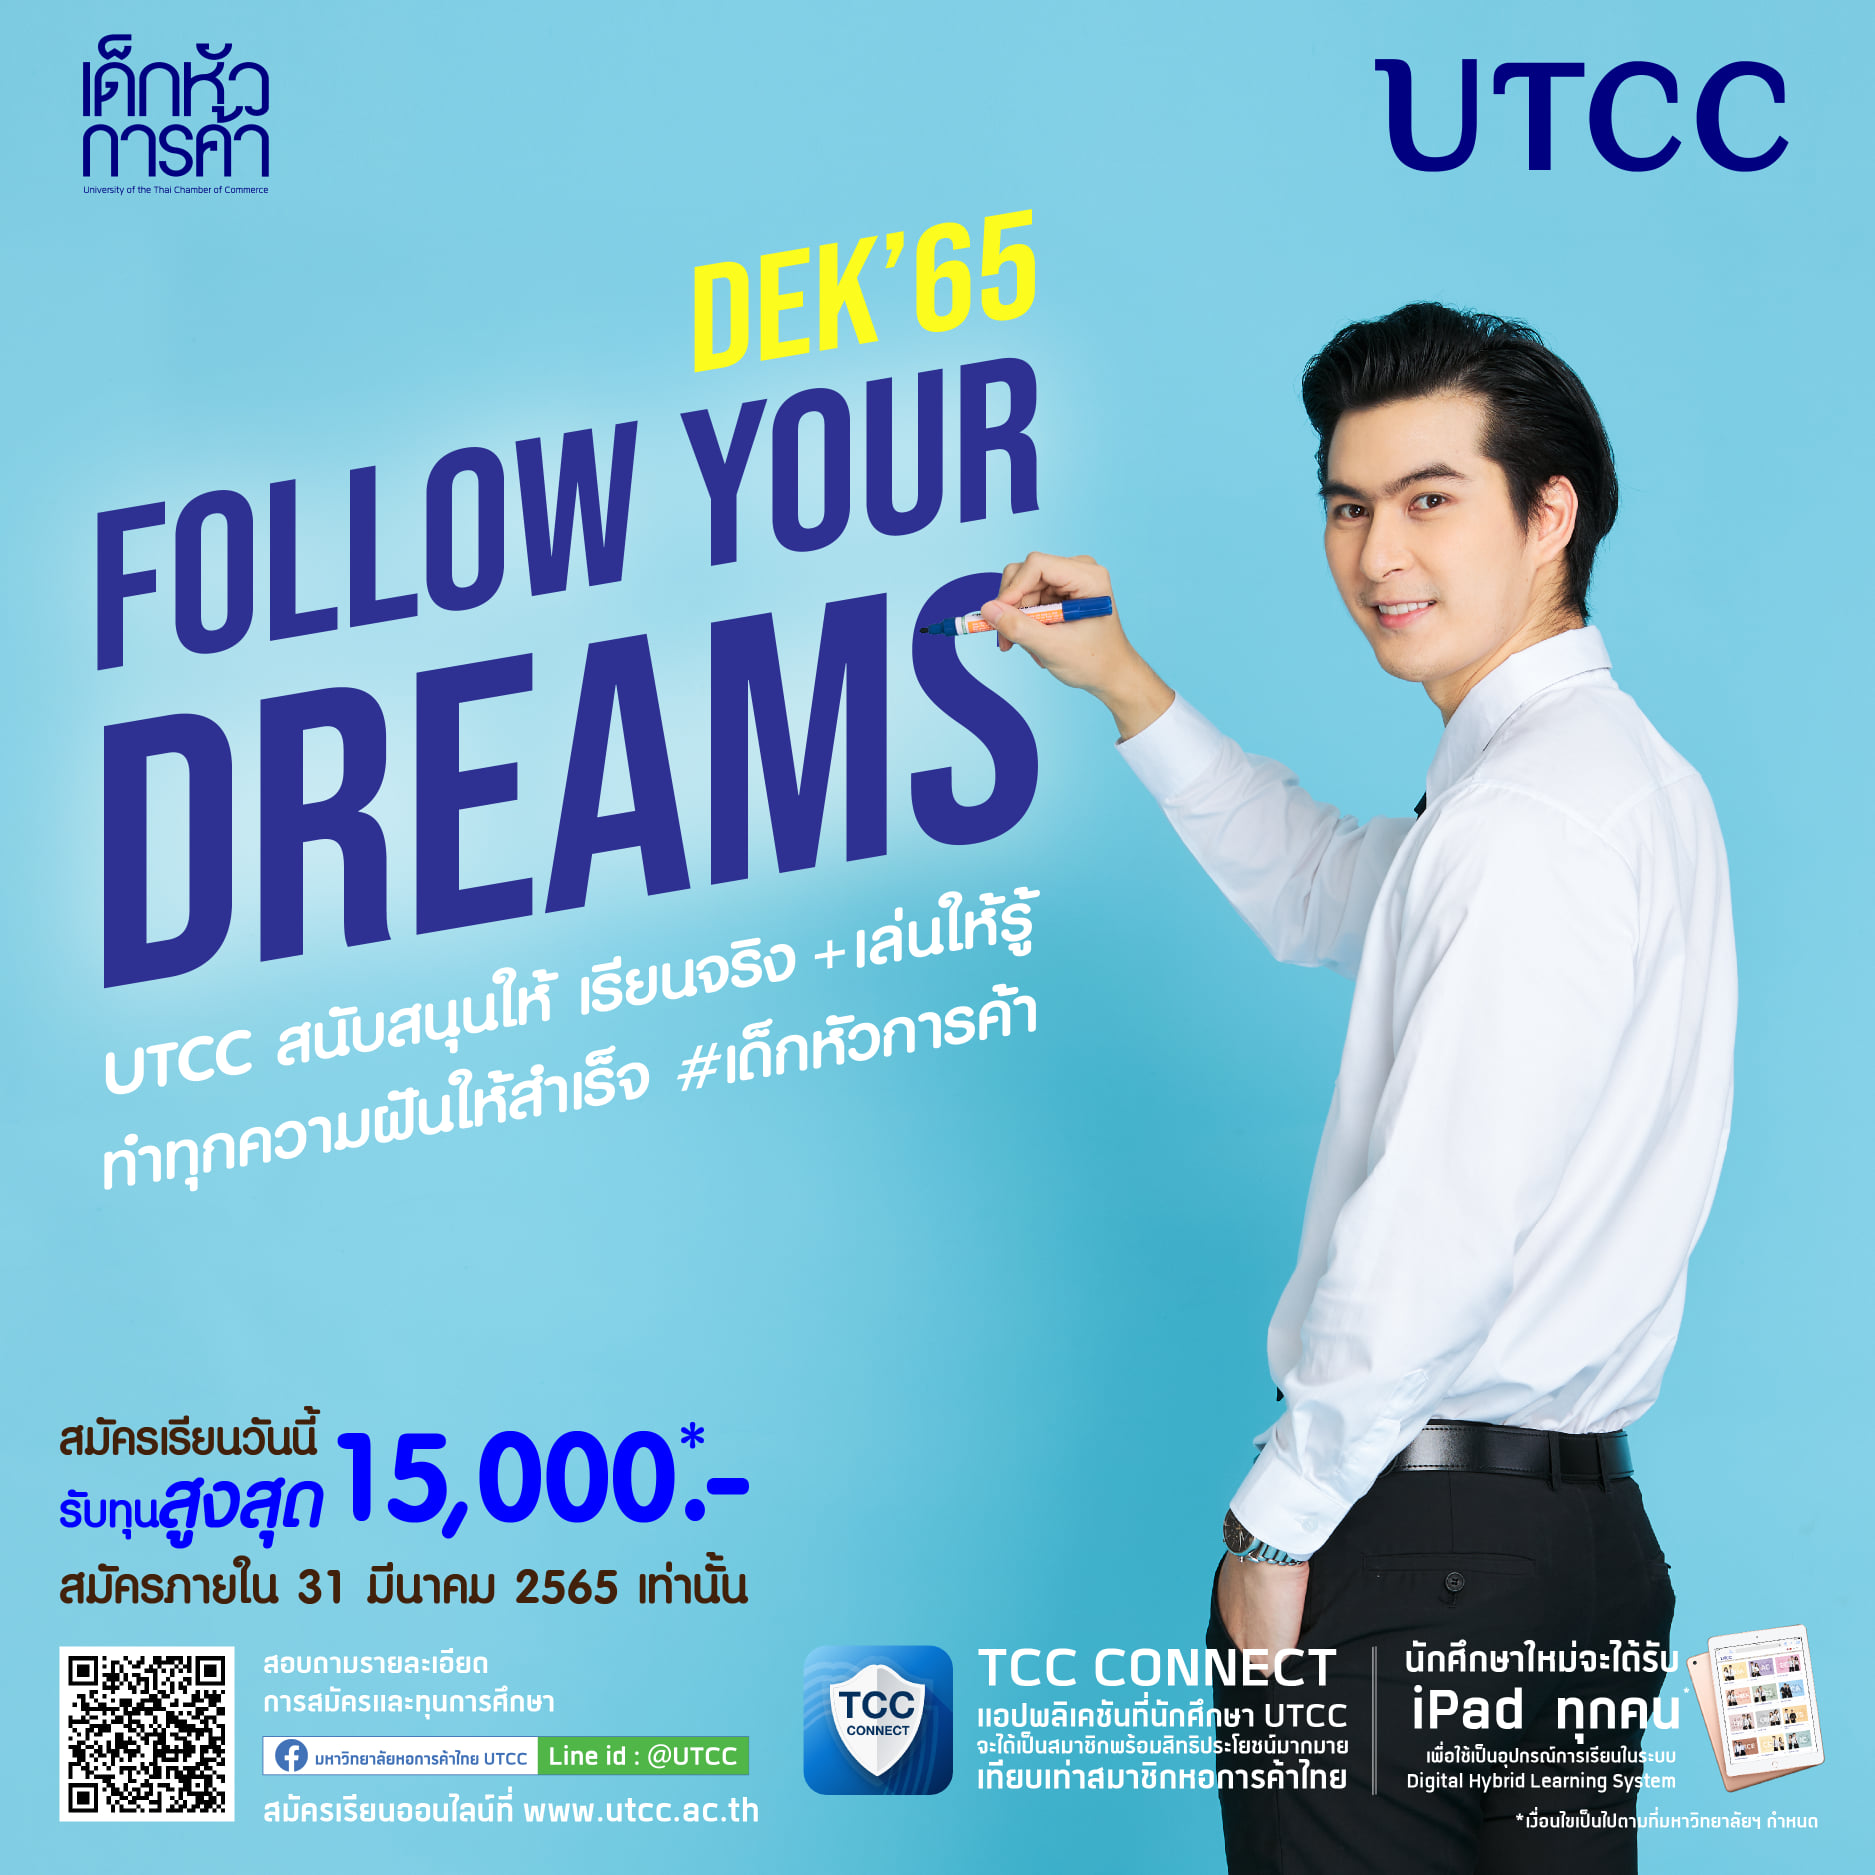 มาทำตามความฝัน Follow Your Dreams ที่ ม.หอการค้าไทย มอบทุน Start Up ส่วนลดค่าเล่าเรียน มูลค่ารวม 15,000 บาท